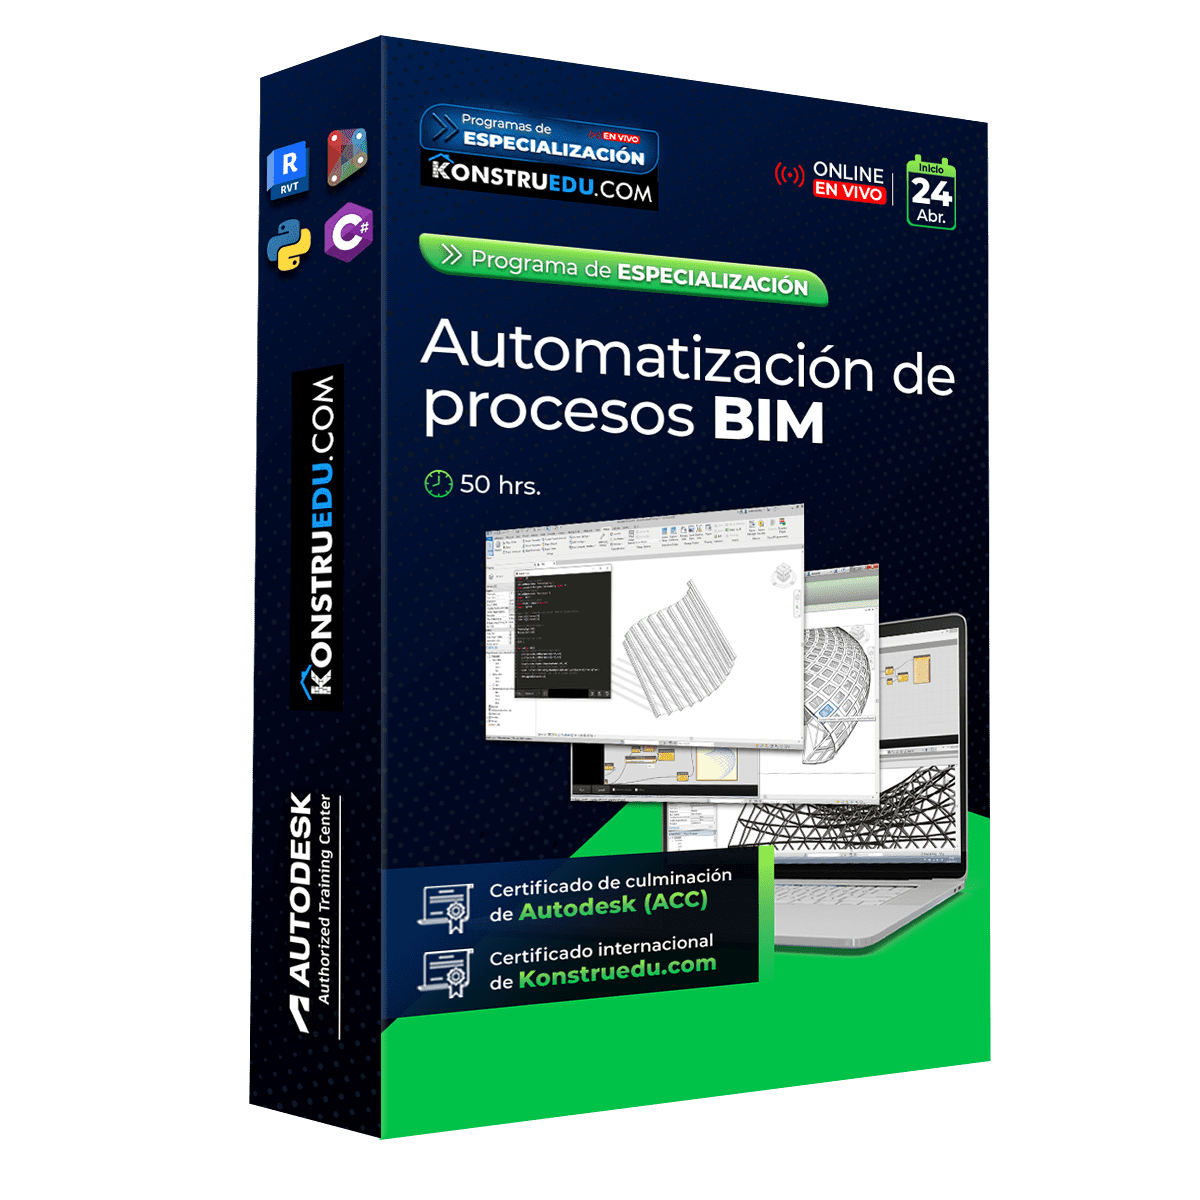 Automotización-de-procesos-BIM (1).webp